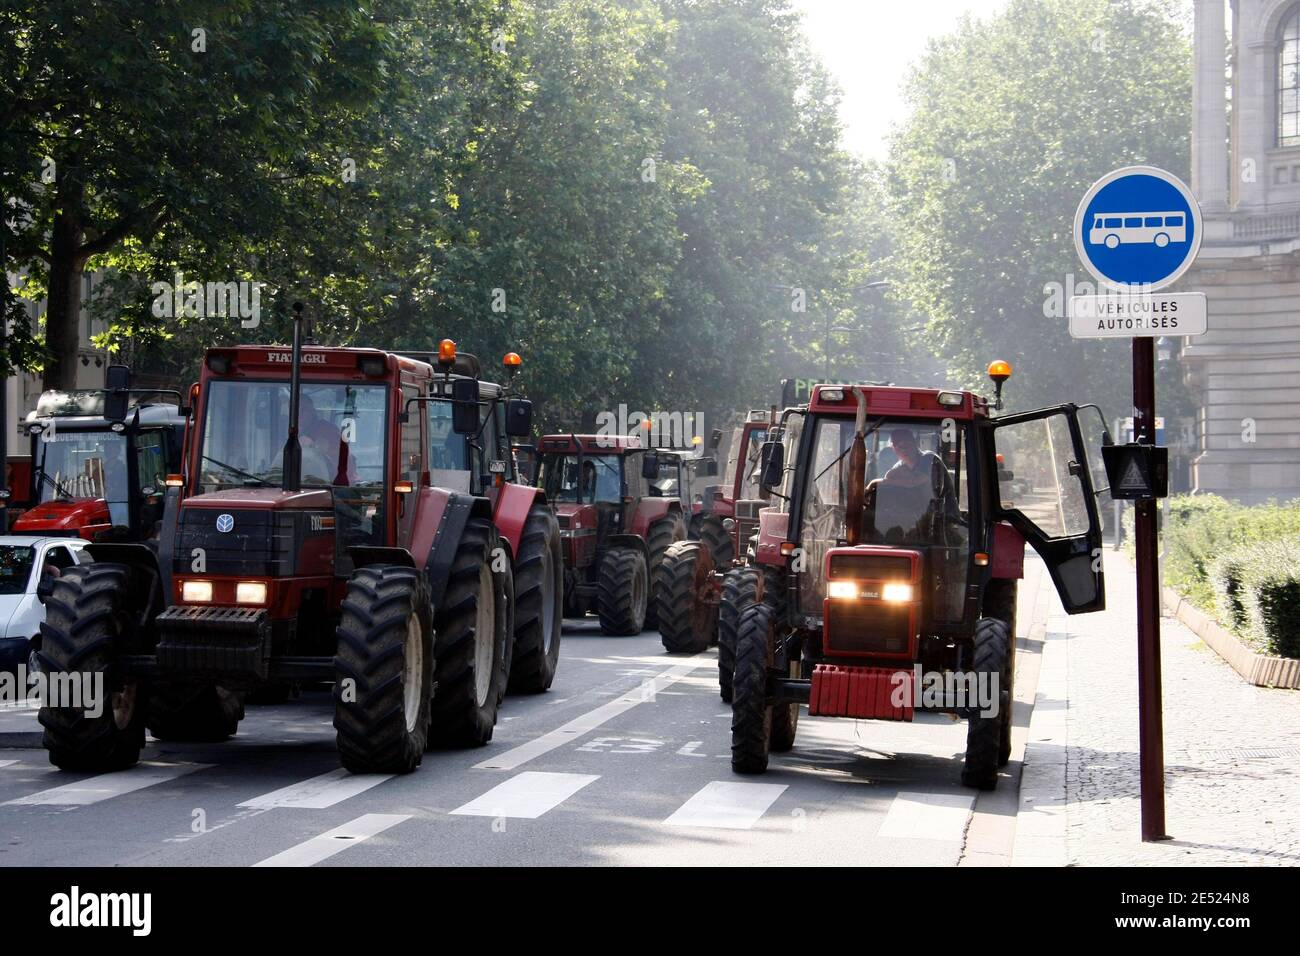 Bauern aus Nord-Pas de Calais, Nordfrankreich, demonstrieren am 9. Juni 2008 in Lille, Frankreich, um gegen die Maßnahmen der Regierung zu protestieren, die Fischer, Landwirte, LKW- und Taxifahrer wegen des steigenden Kraftstoffpreises verfolgen. Foto von Stockfoto